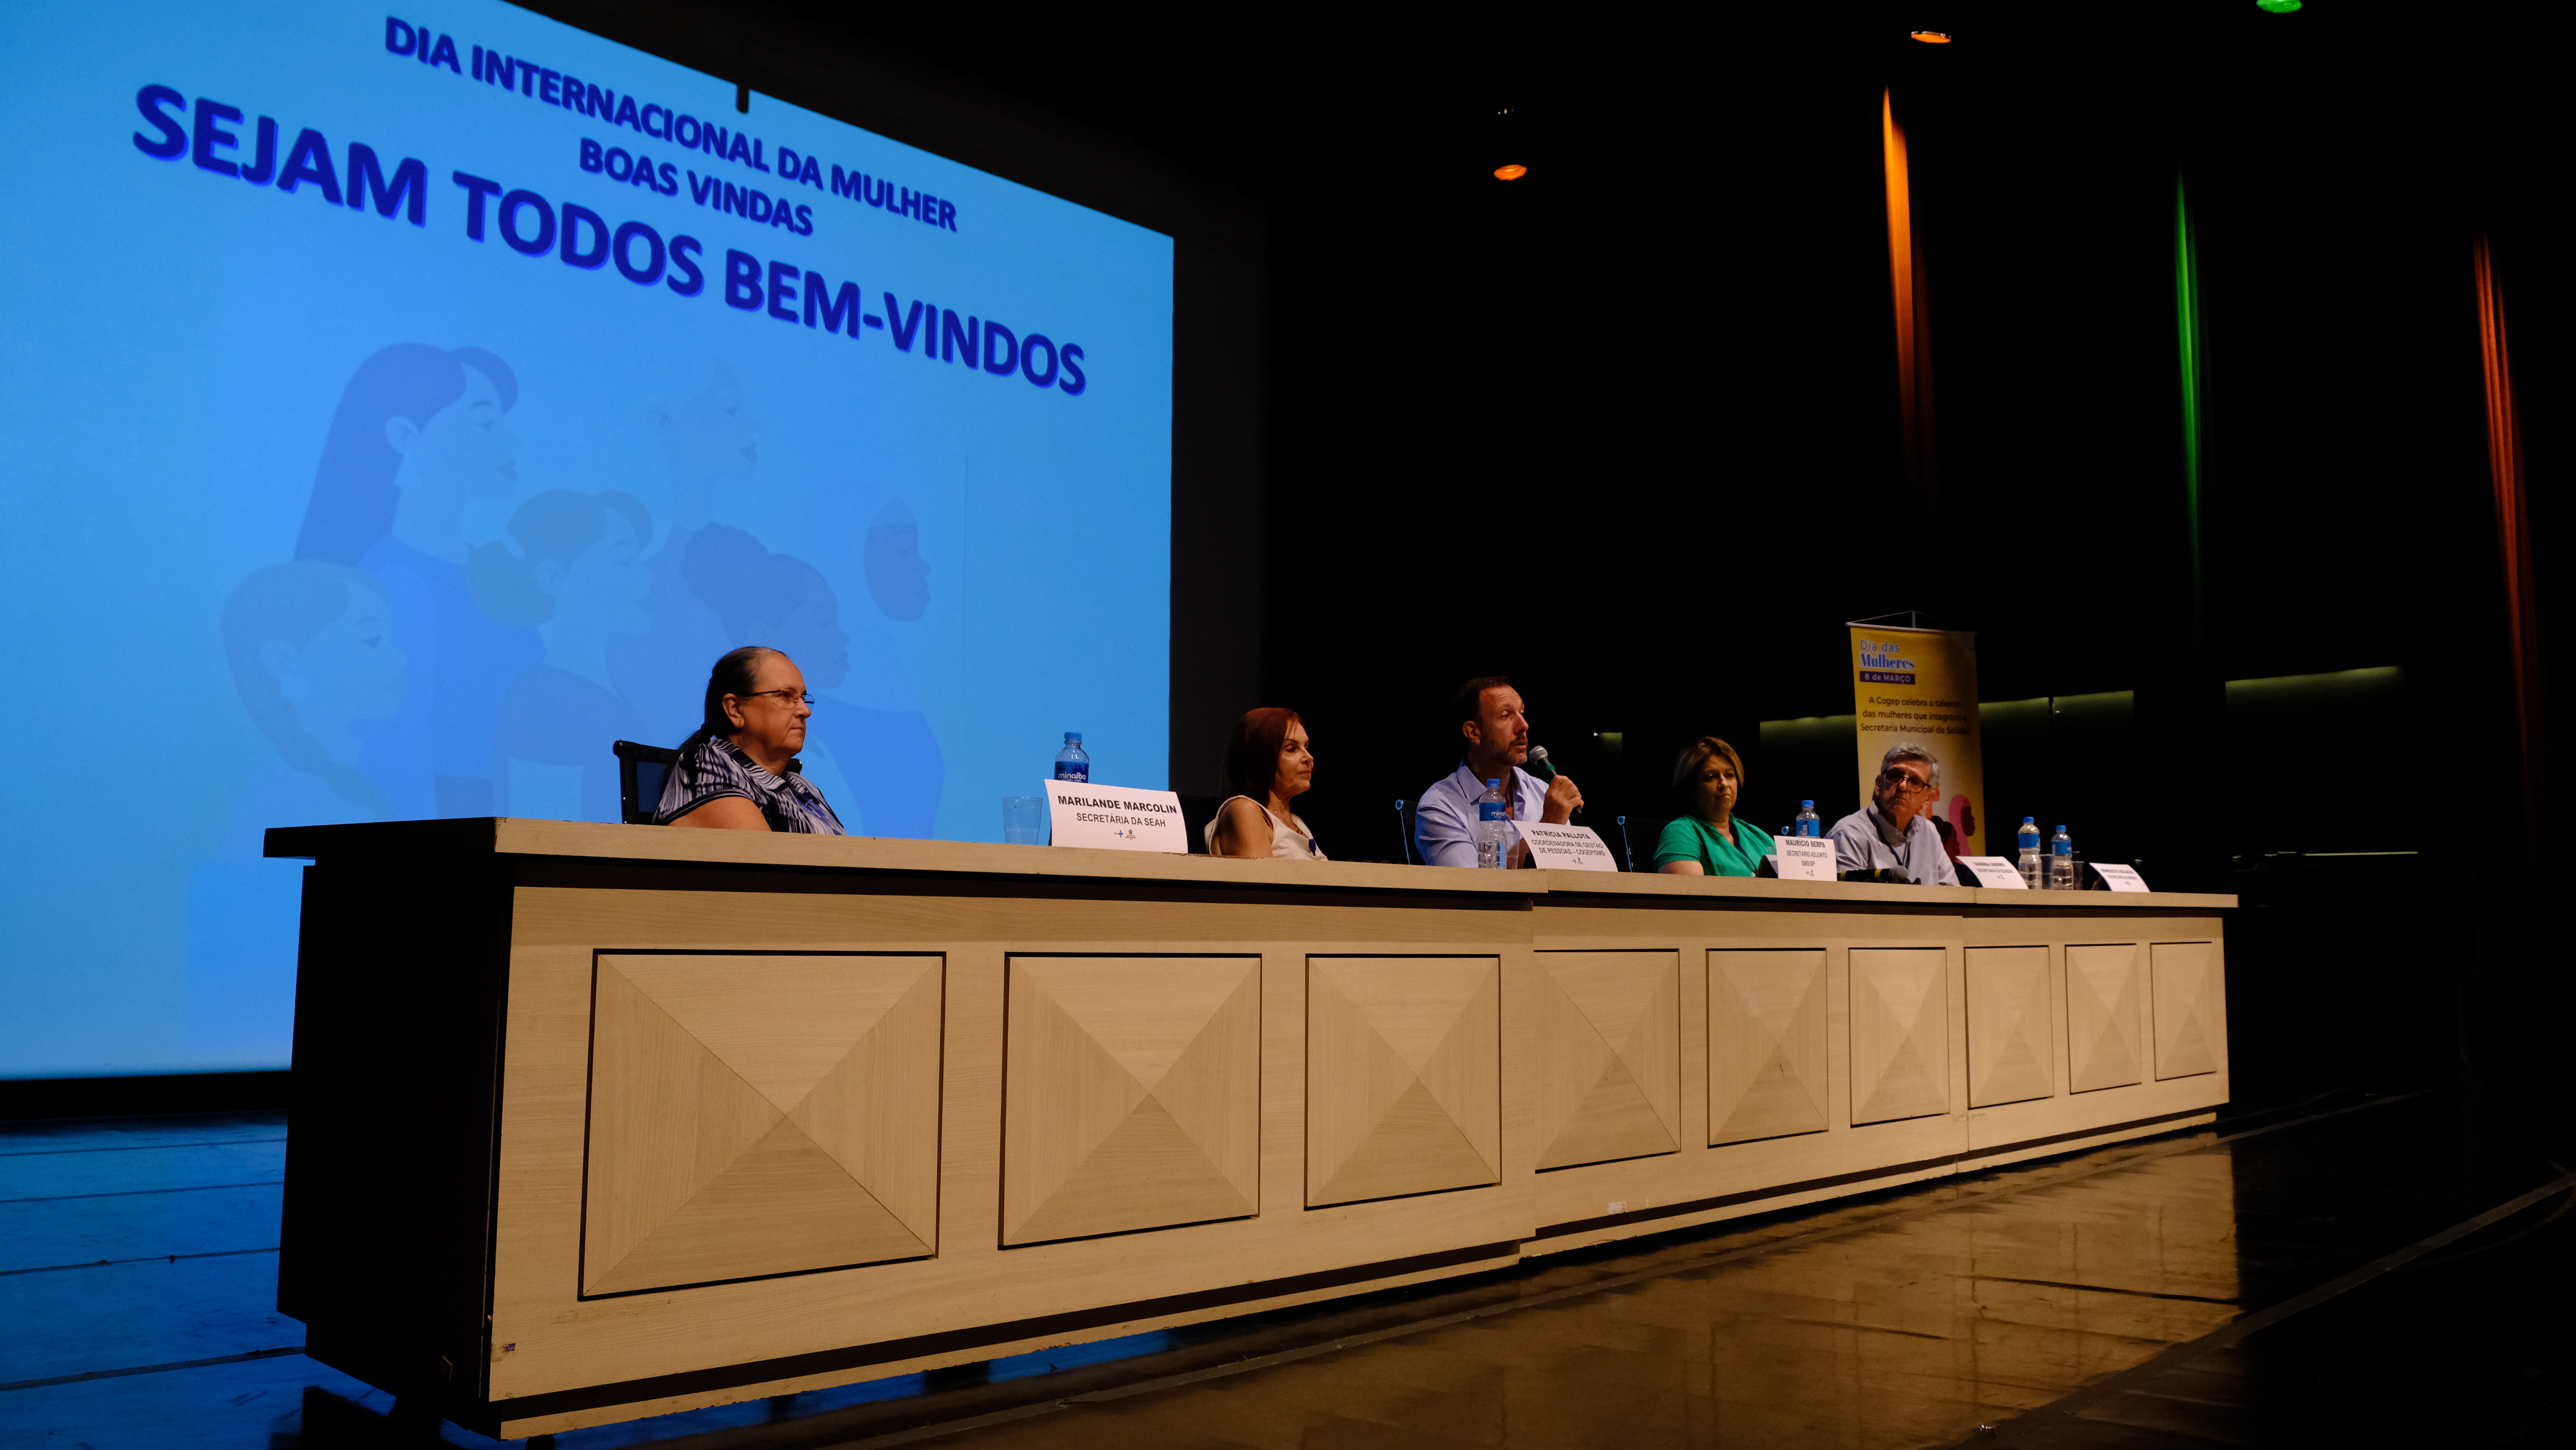 Maurício Serpa, Sandra Sabino, Marilande Marcolin, Patrícia Pallota e o Benedicto Accacio compõem uma mesa que está localizada no centro da imagem.  Maurício Serpa fala ao microfone.